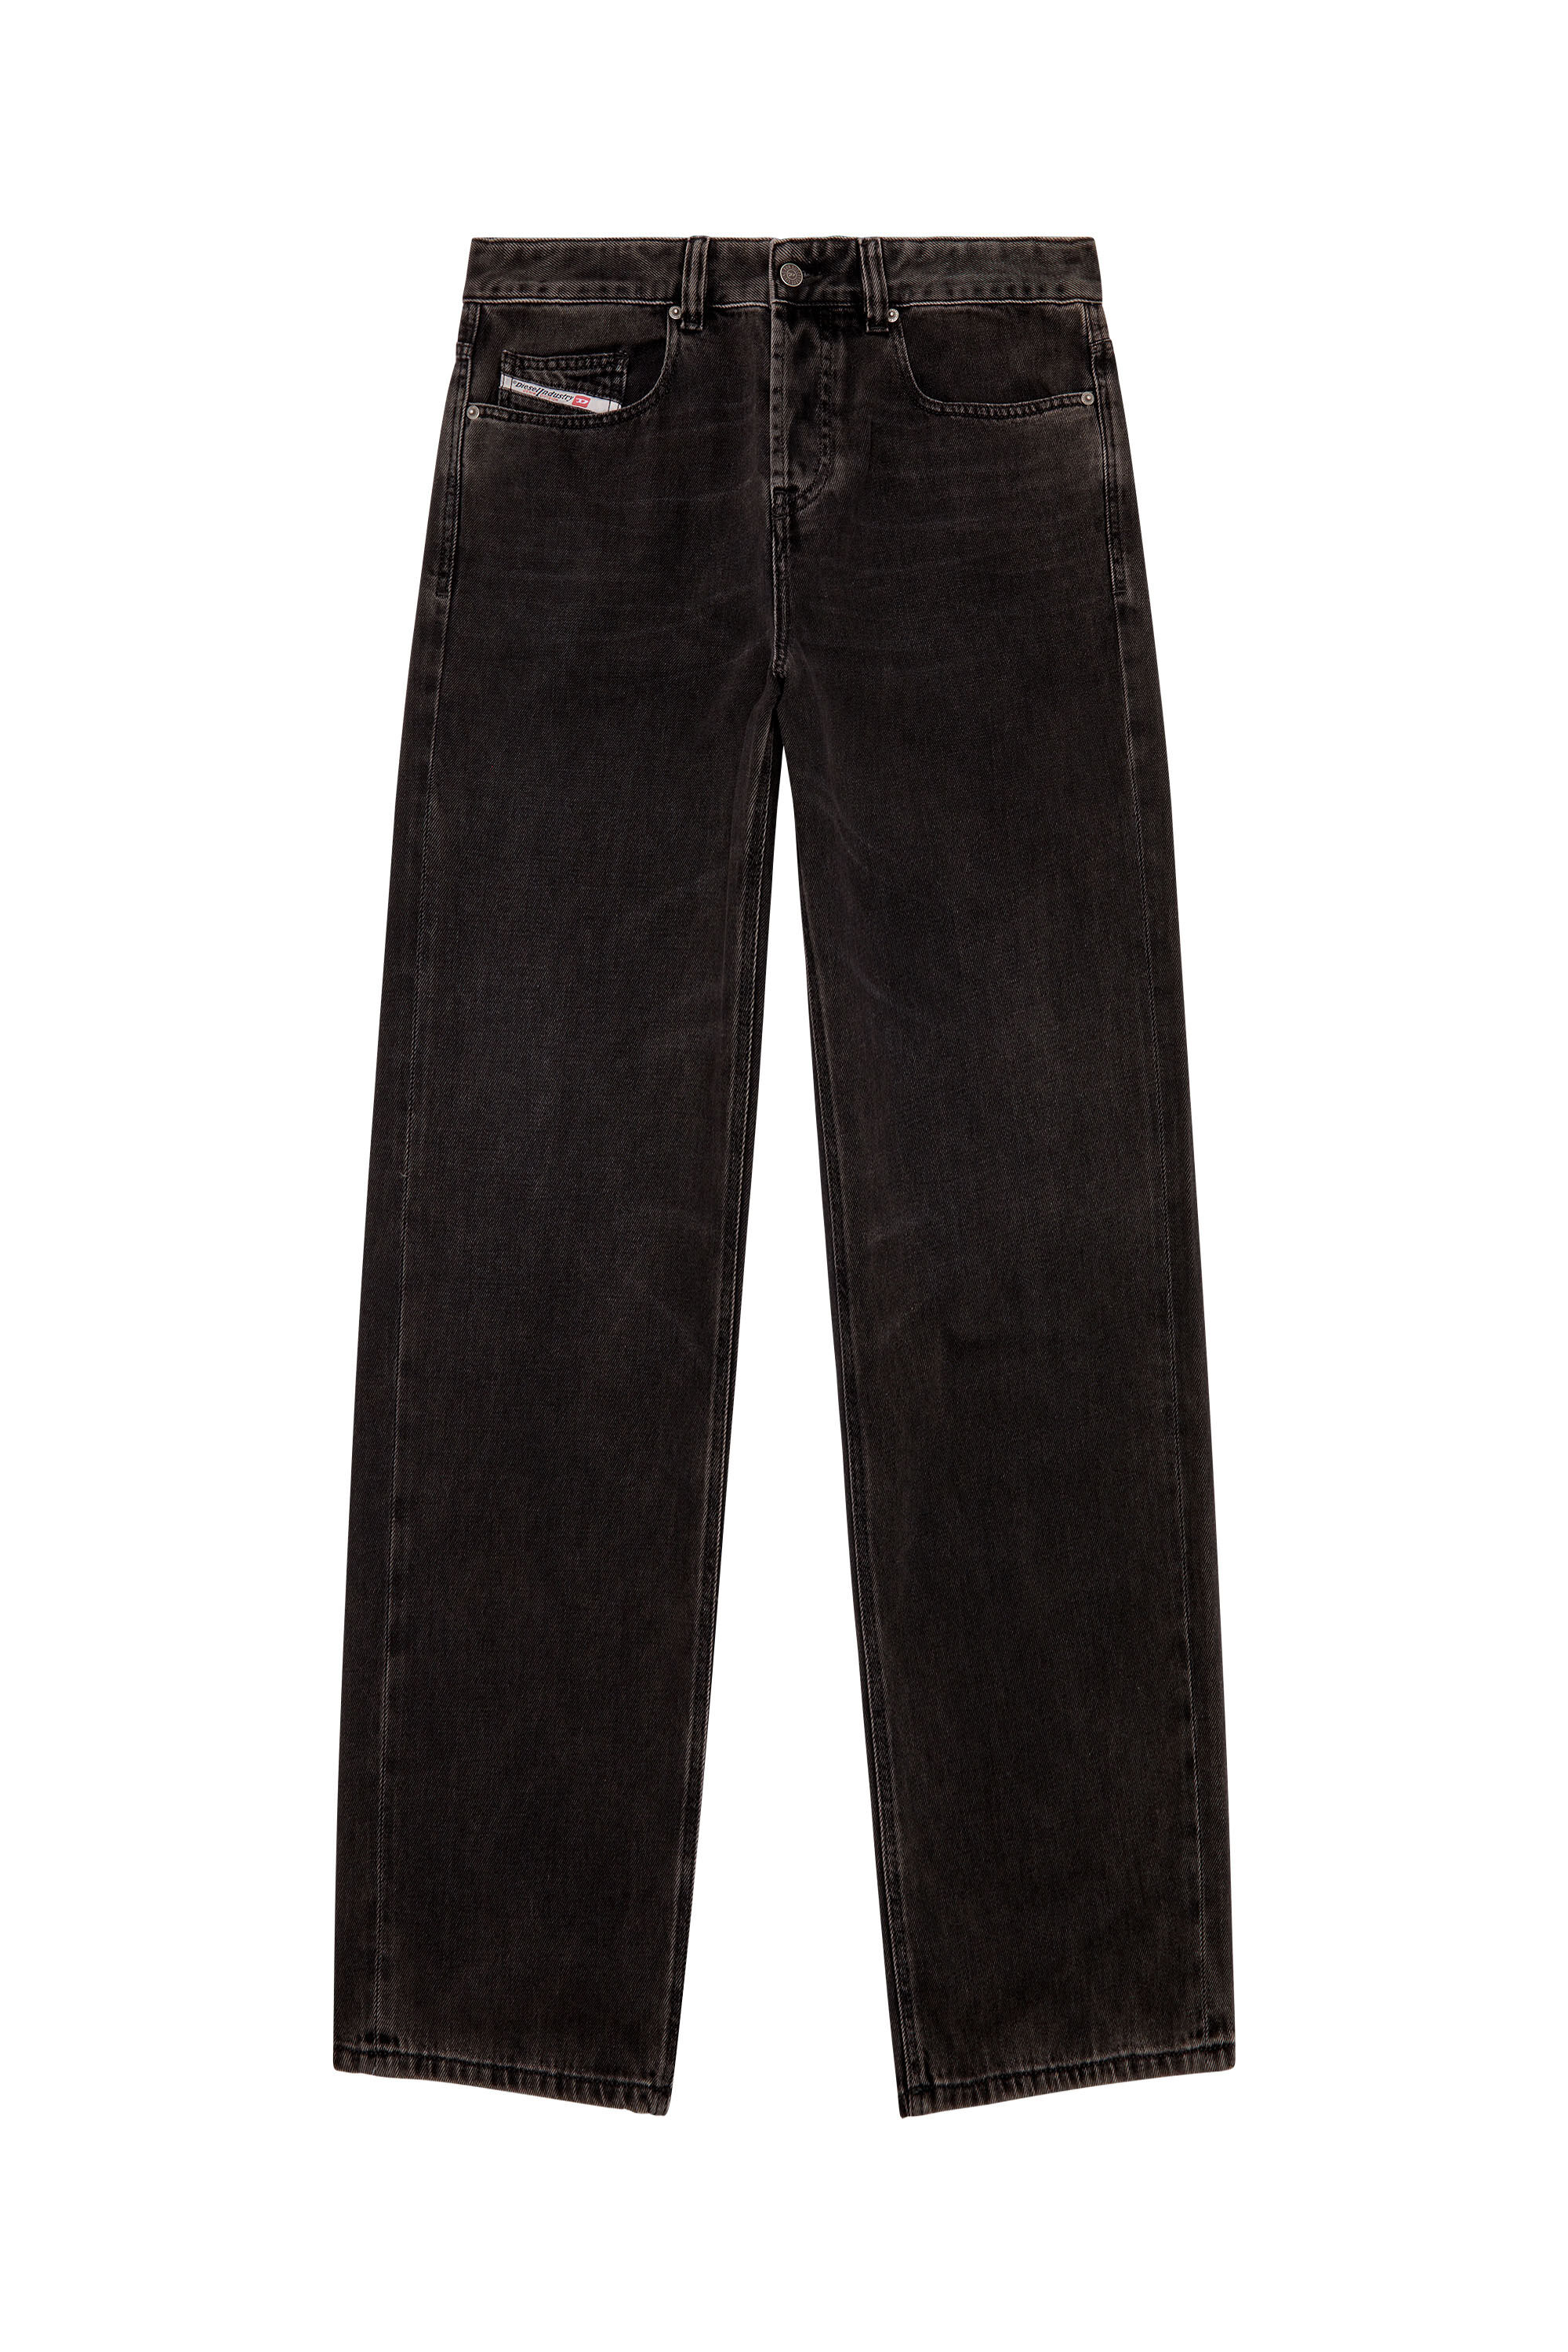 Men's Straight Jeans | Black/Dark grey | Diesel 2001 D-Macro